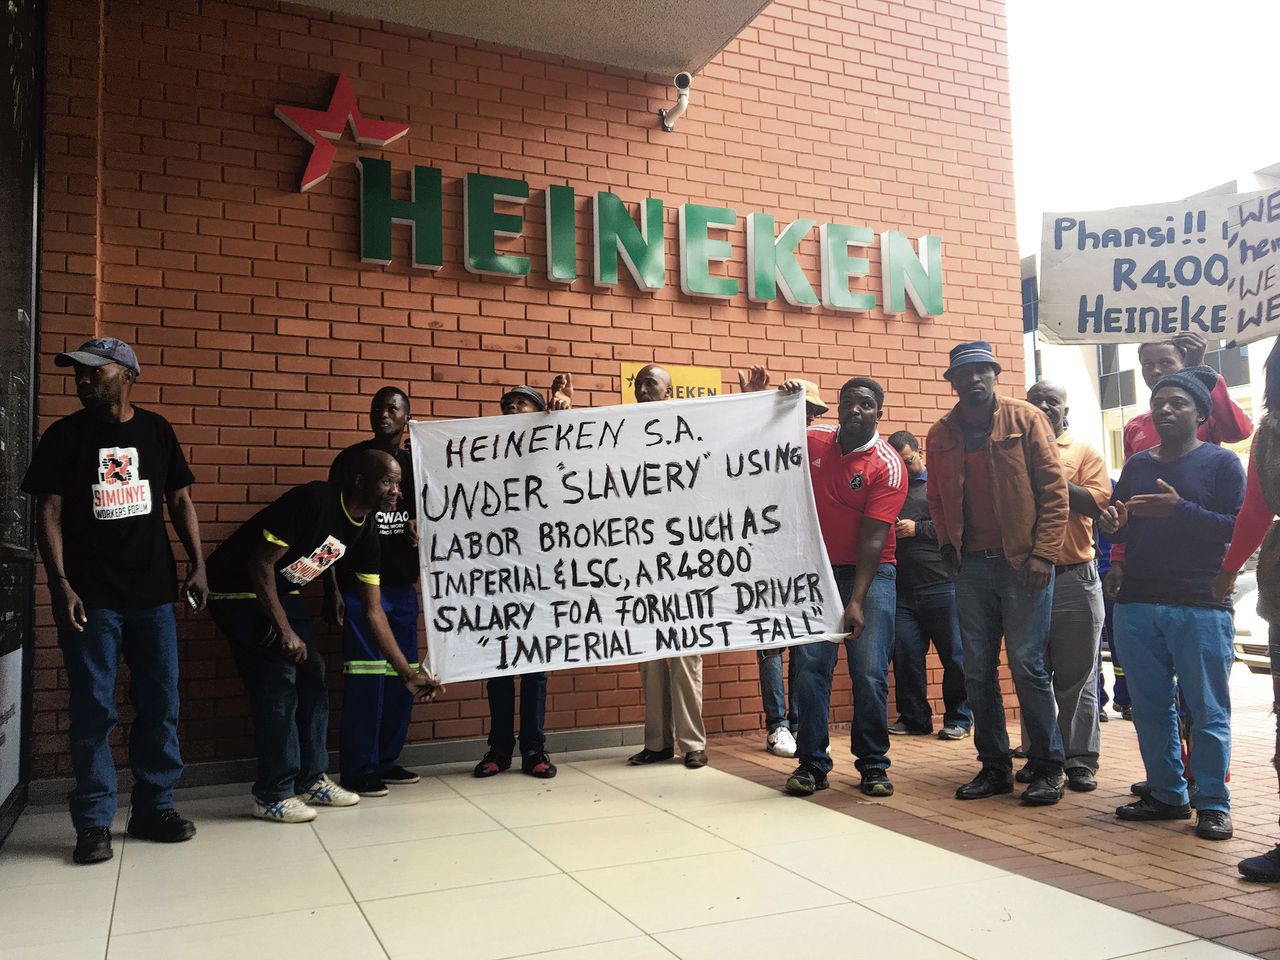 Medewerkers van Imperial protesteren bij het hoofdkantoor van Heineken in Zuid-Afrika. Ze verwijten de brouwer slavernij.